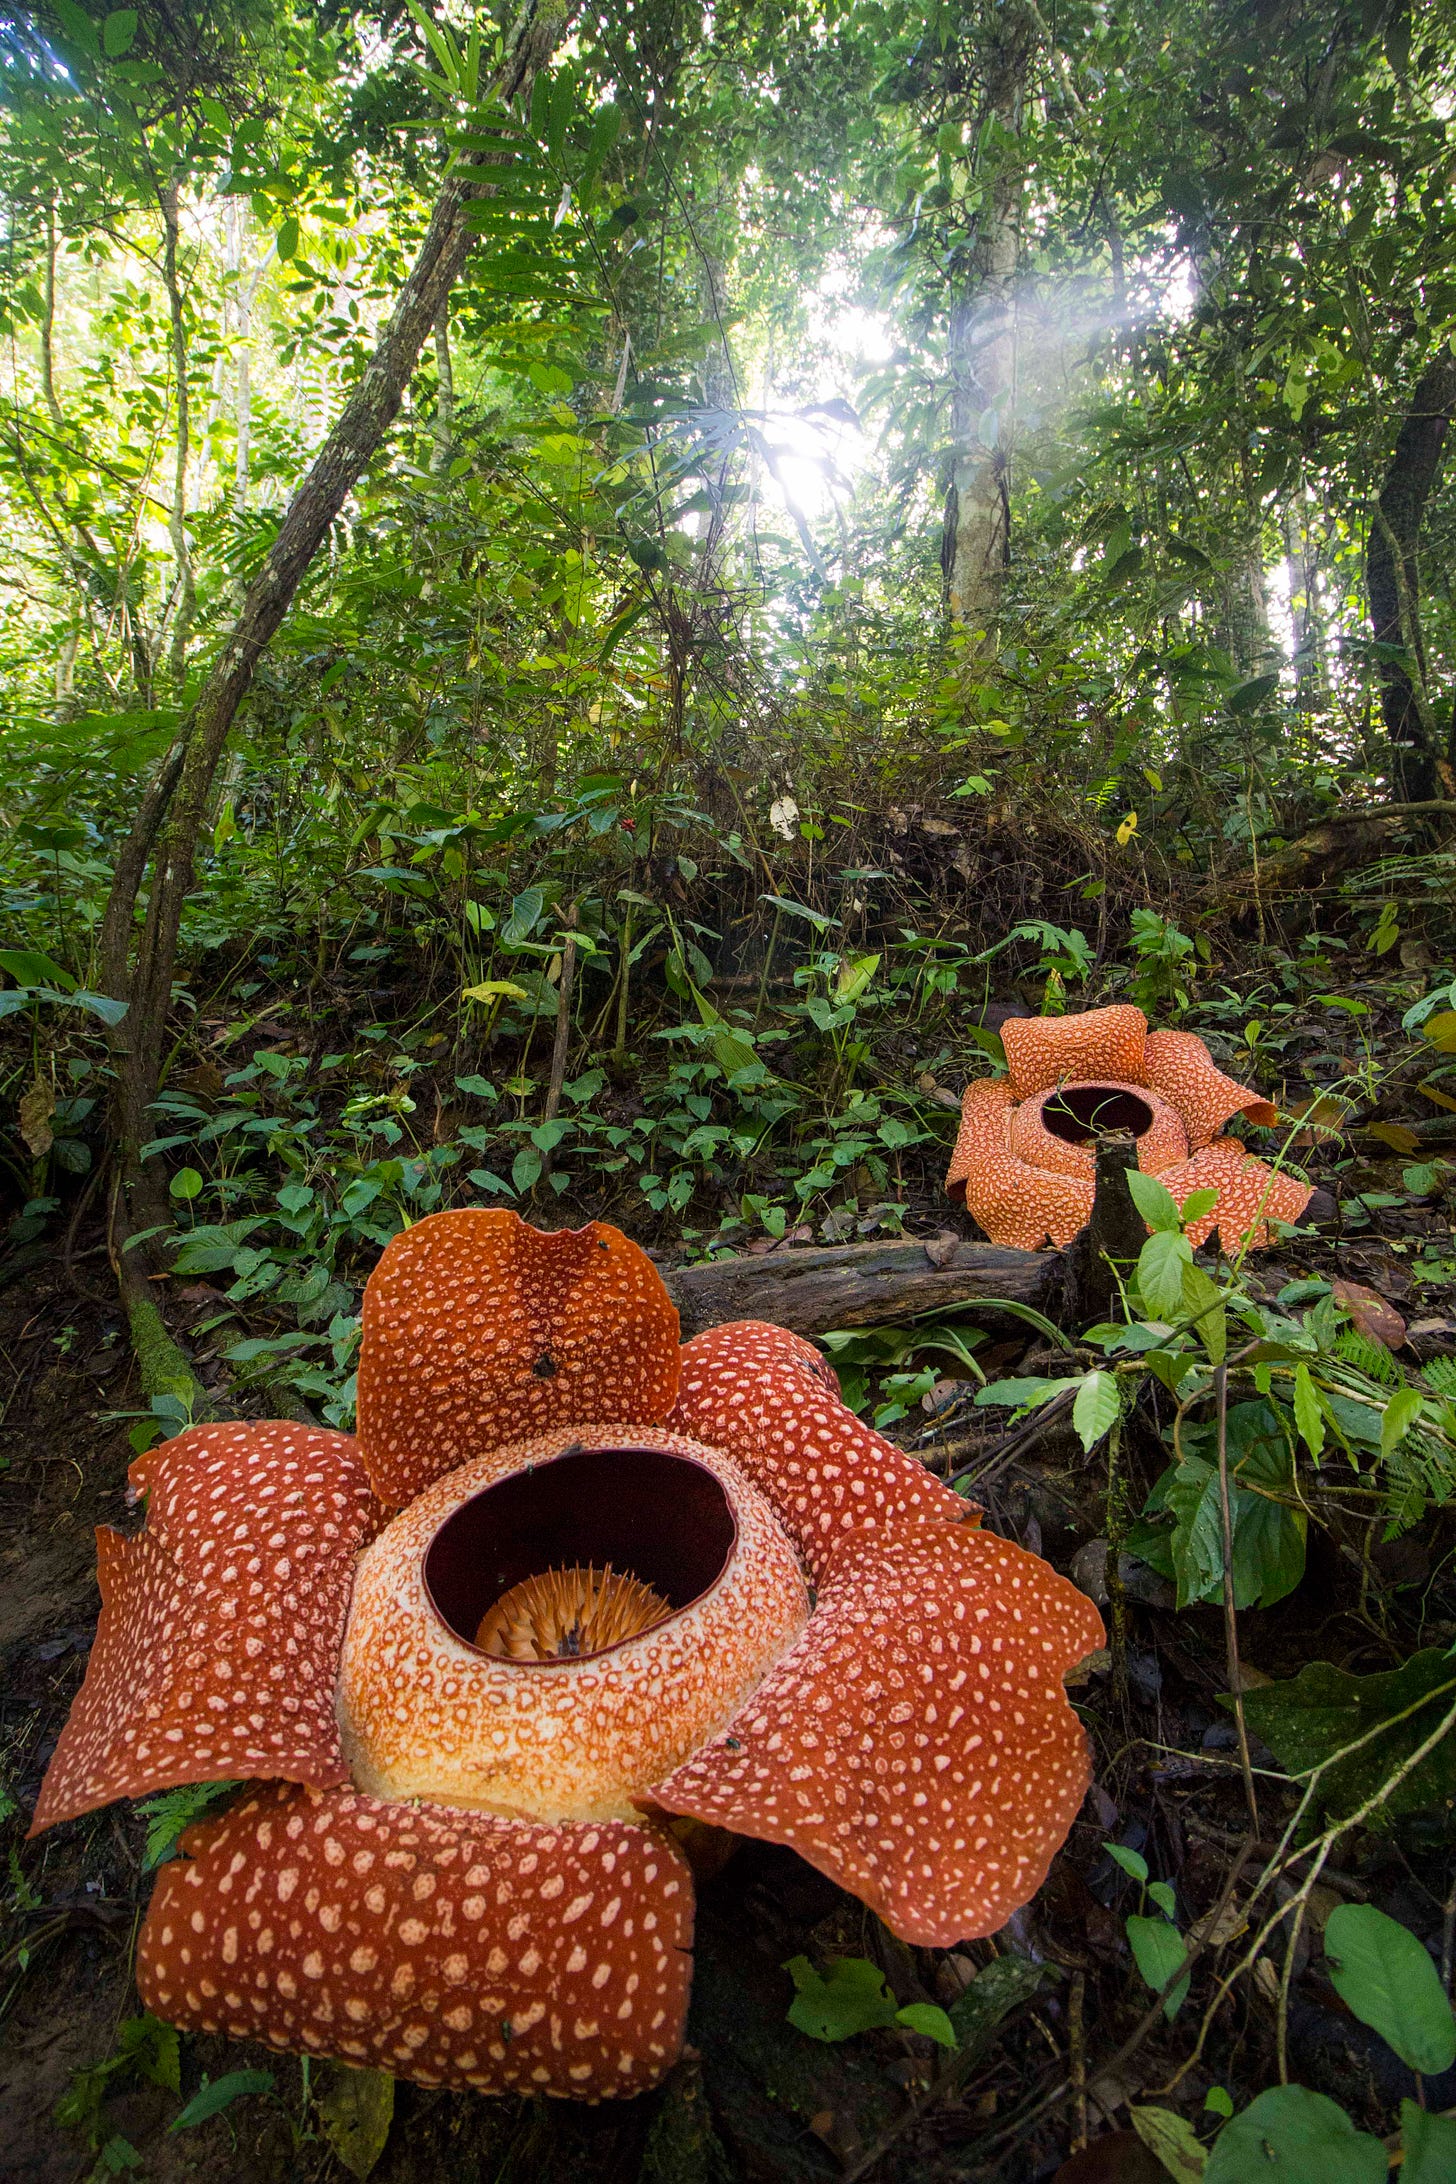 Rafflesia - Wikipedia